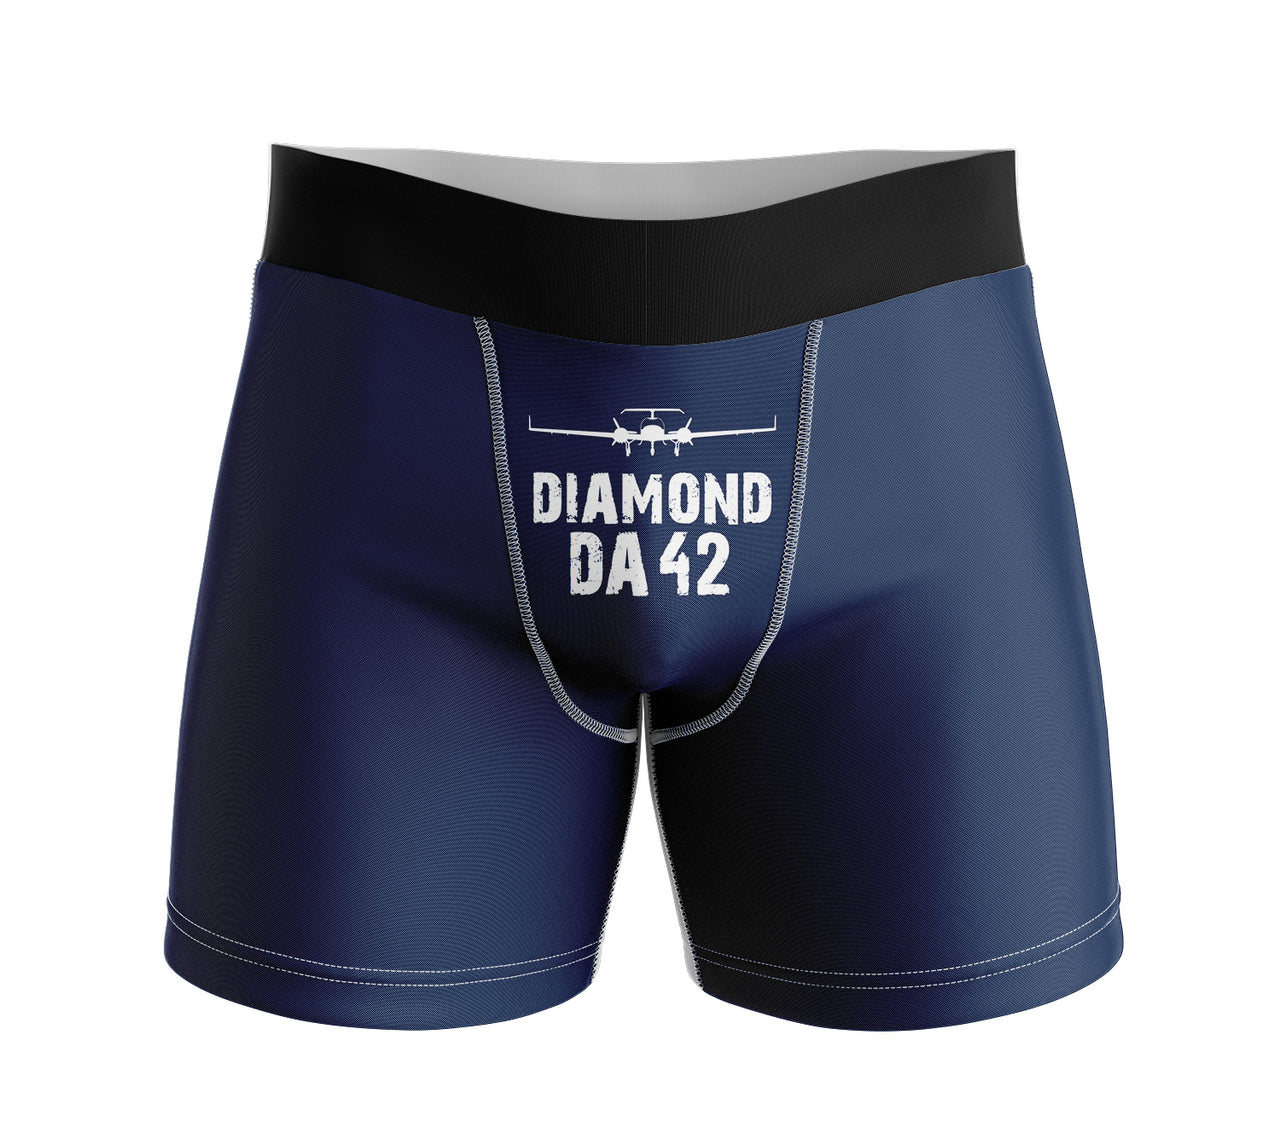 Diamond DA42 & Plane Designed Men Boxers